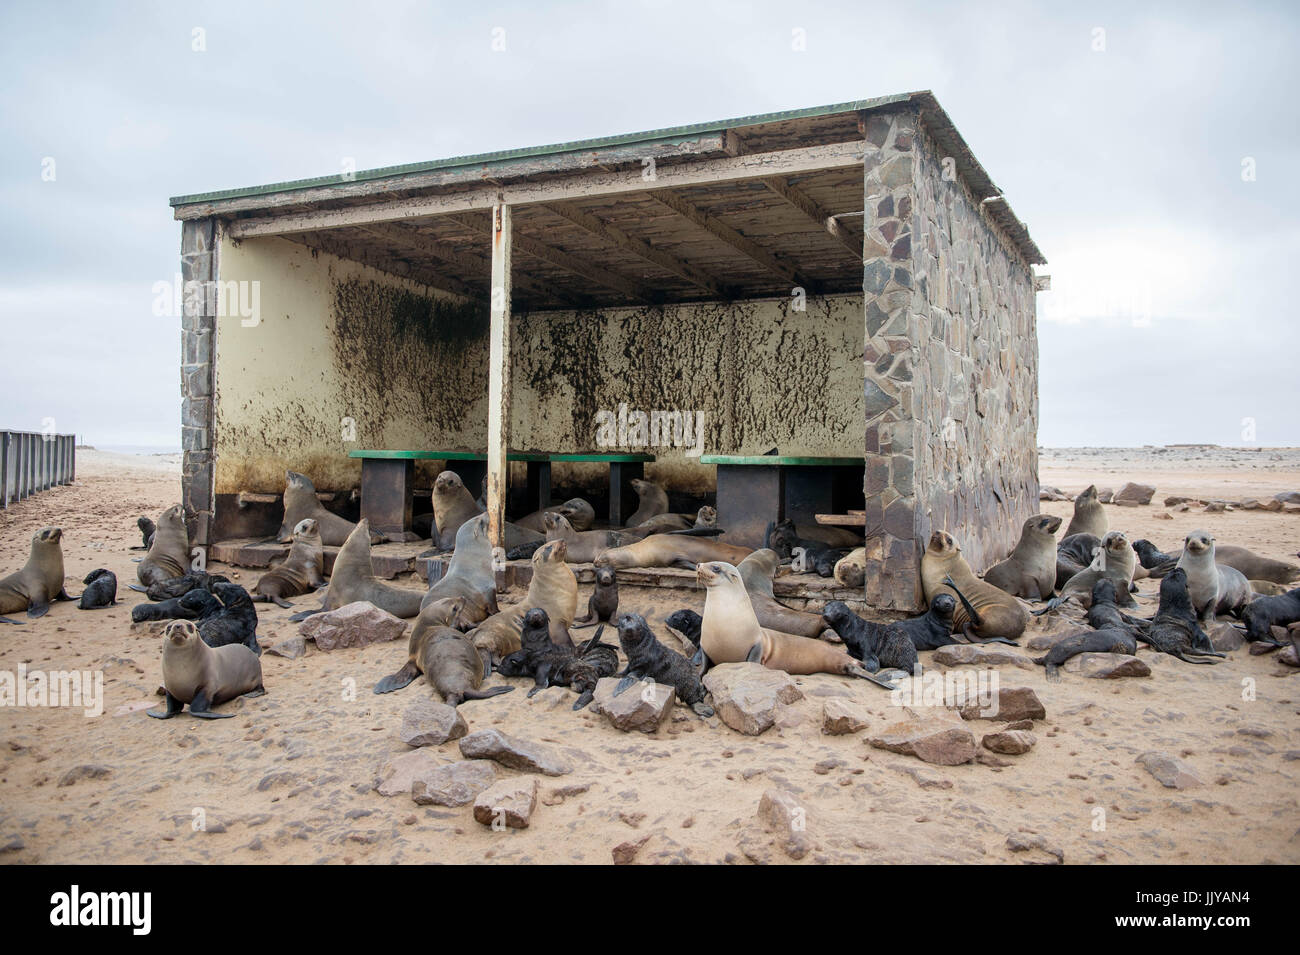 Les otaries à fourrure du Cap sont recueillies et de repos à l'intérieur d'une structure abandonnés sur les plages de Cape Cross, situé en Namibie, l'Afrique. Le Cape Cross Seal Banque D'Images